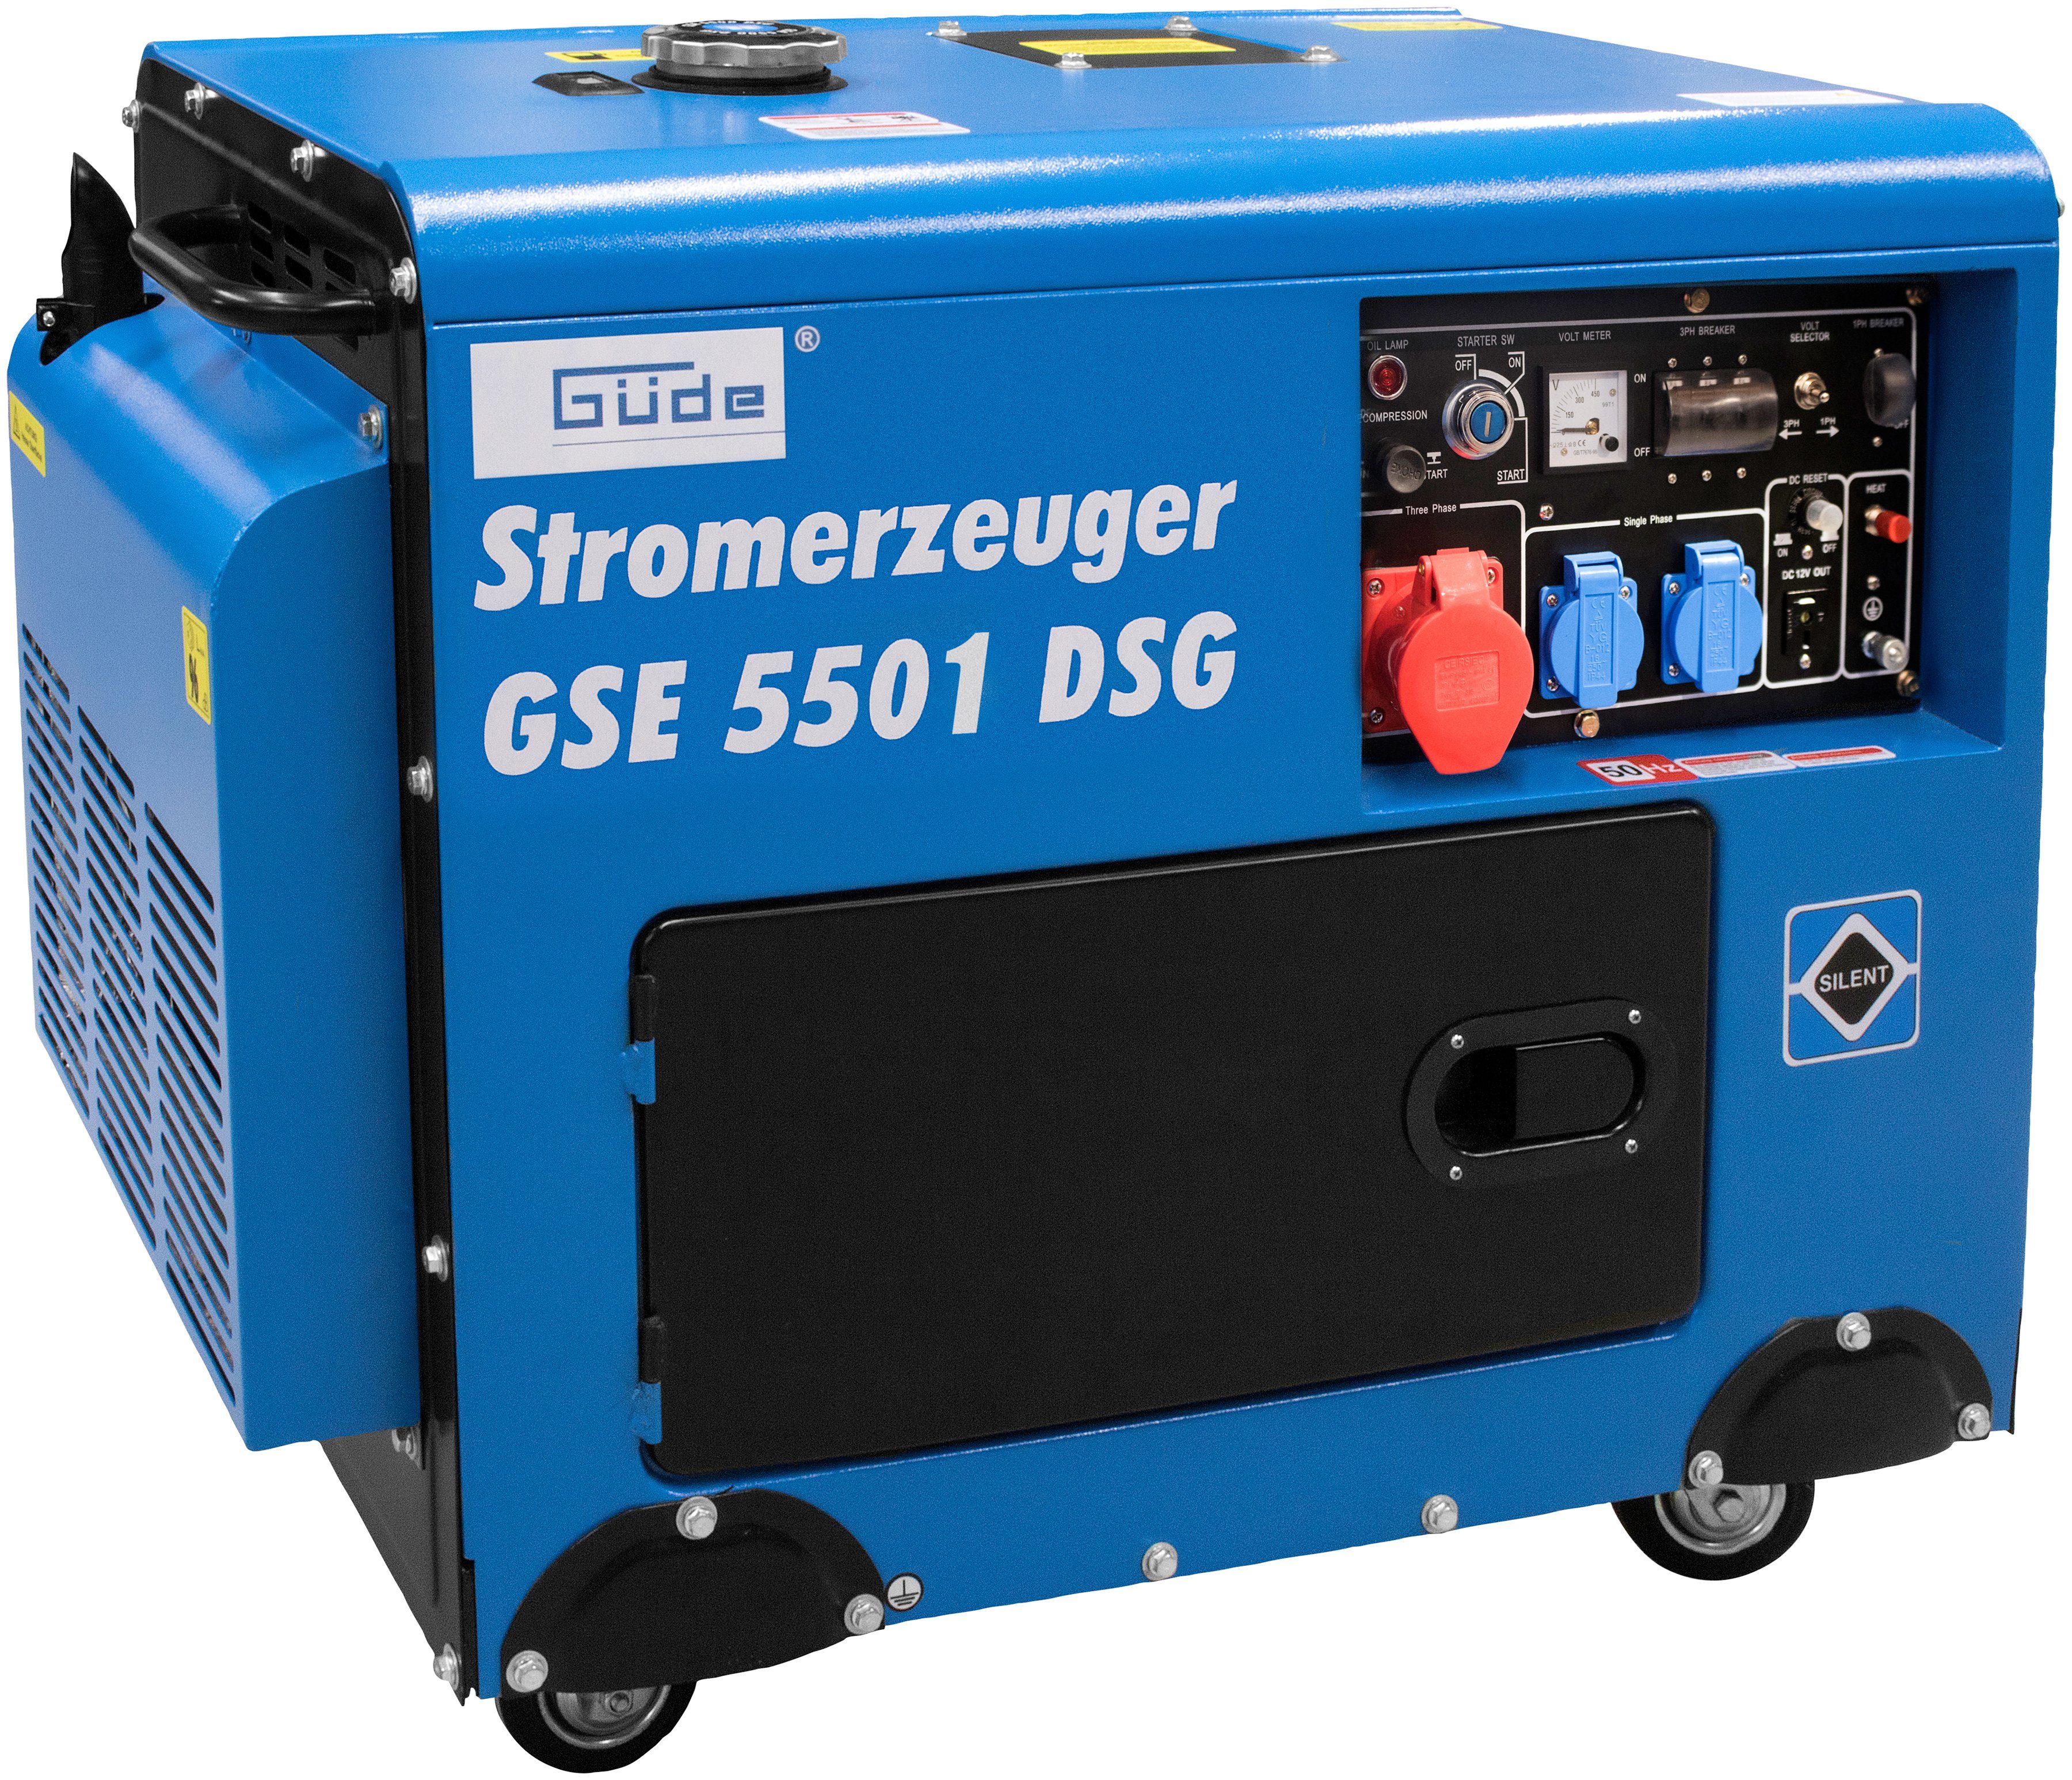 V/50 GSE CEE 230 in V/50 A/400 Hz 1 x Stromerzeuger 16 Güde 6,5 x kW, Schuko Hz, DS, 2 5501